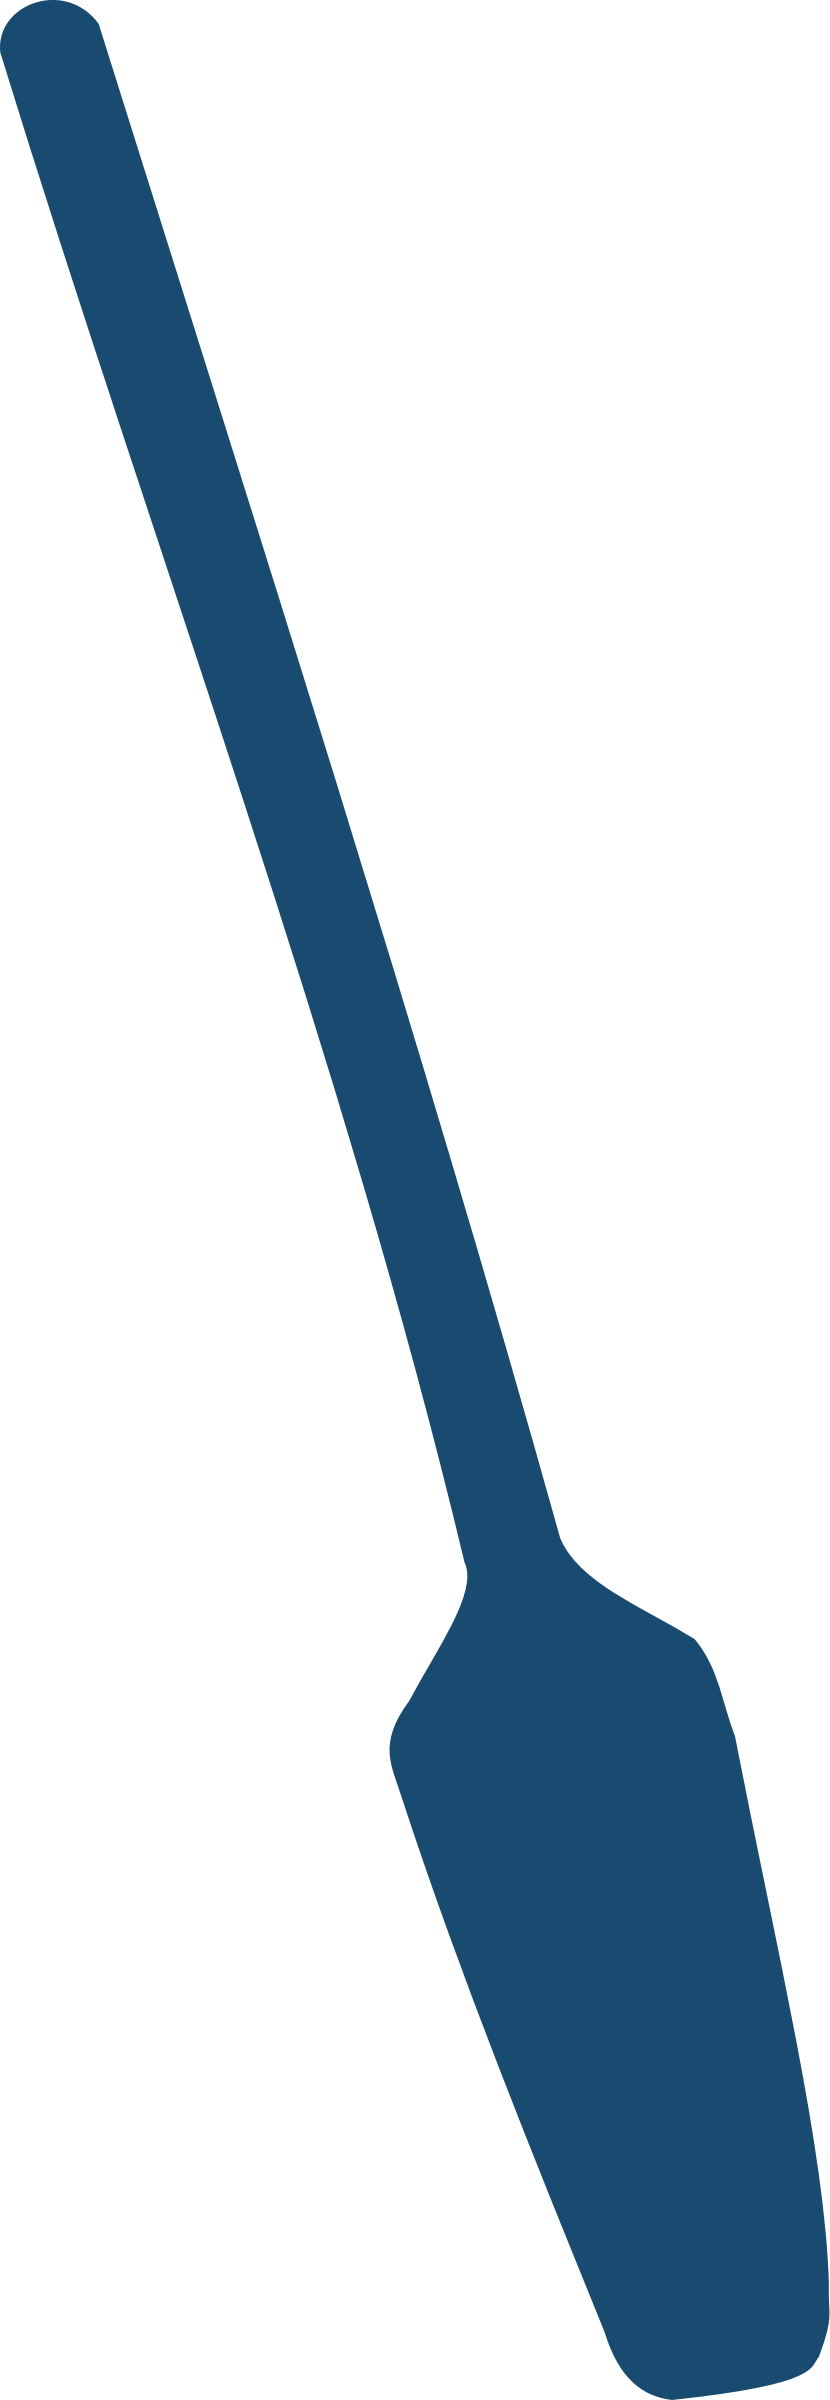 Images For > Oar Paddle Clip Art - Blue Oar Clip Art (830x2400)